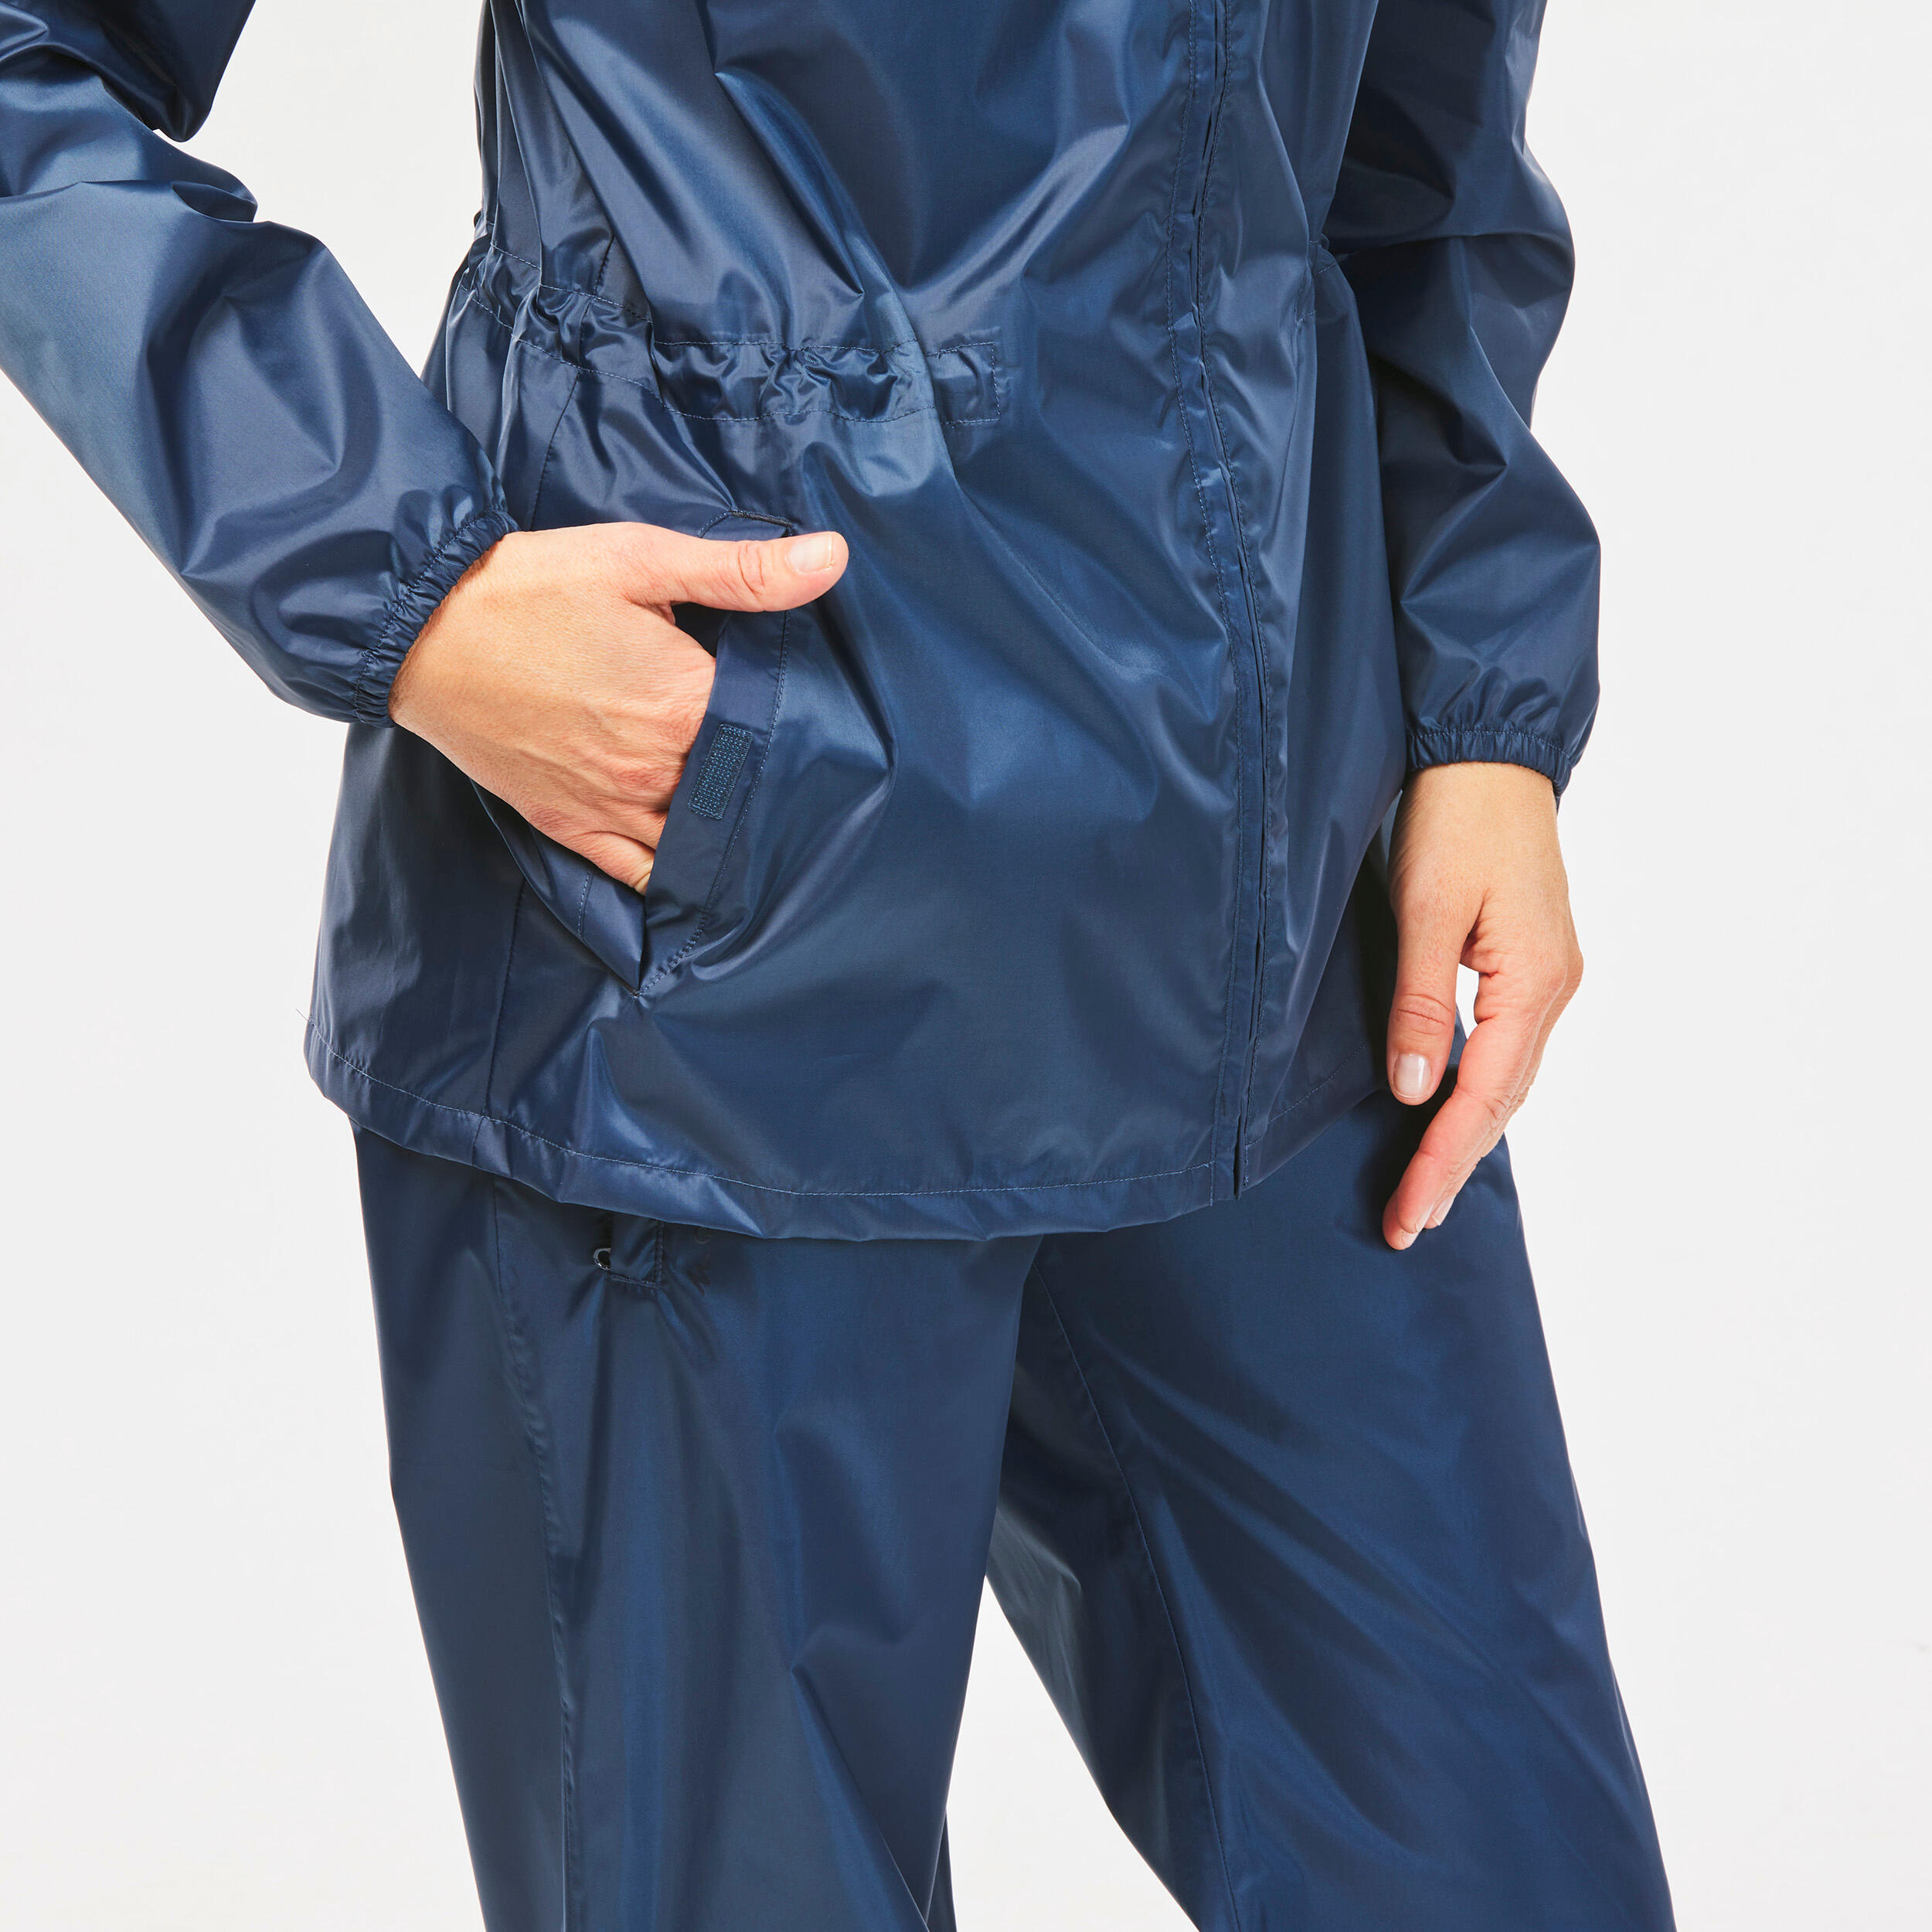 Women's Windproof and Water-repellent Hiking Jacket - Raincut Full Zip 8/8